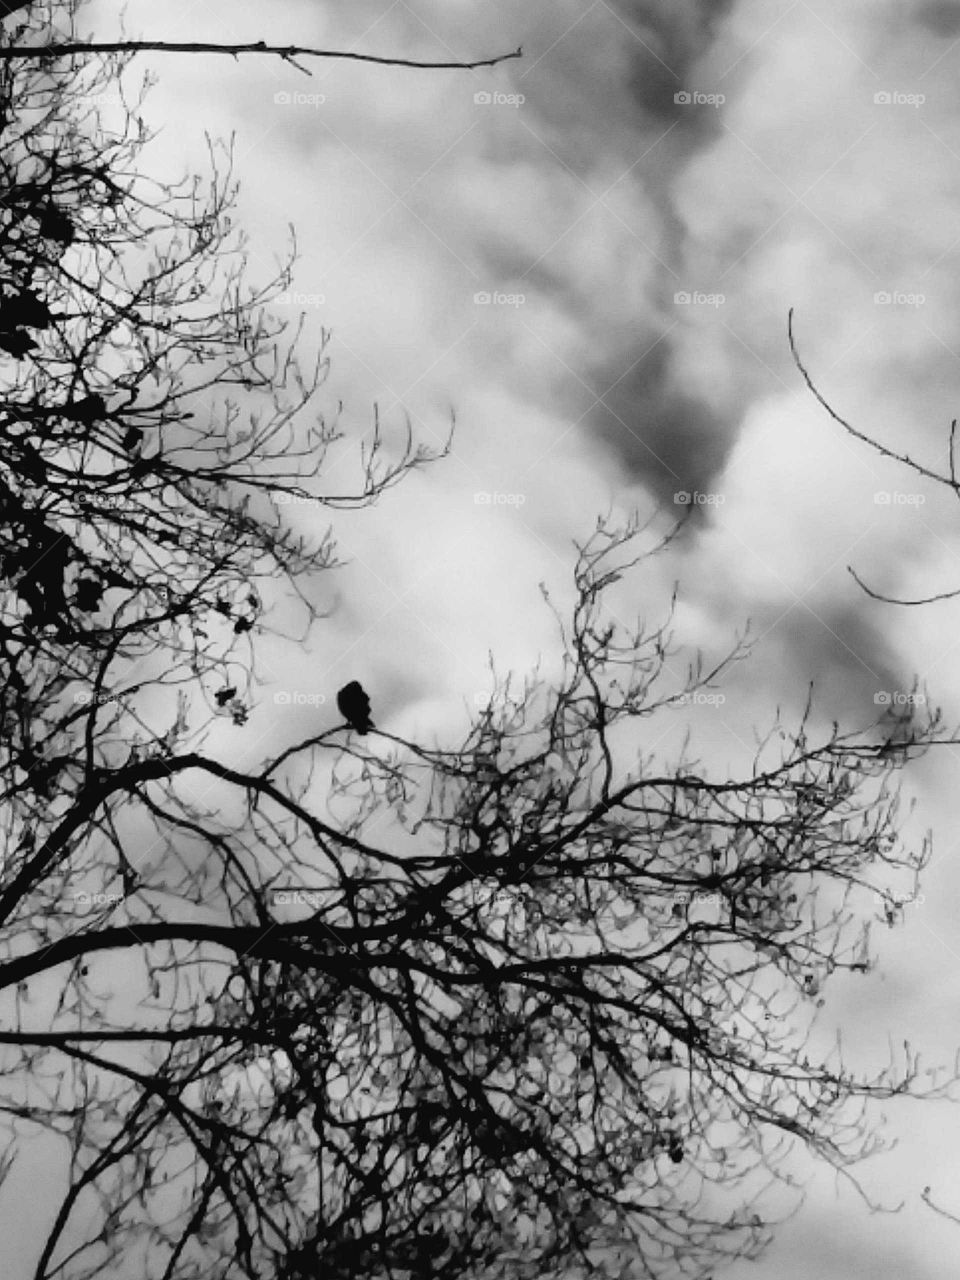 Hawk on tree branch